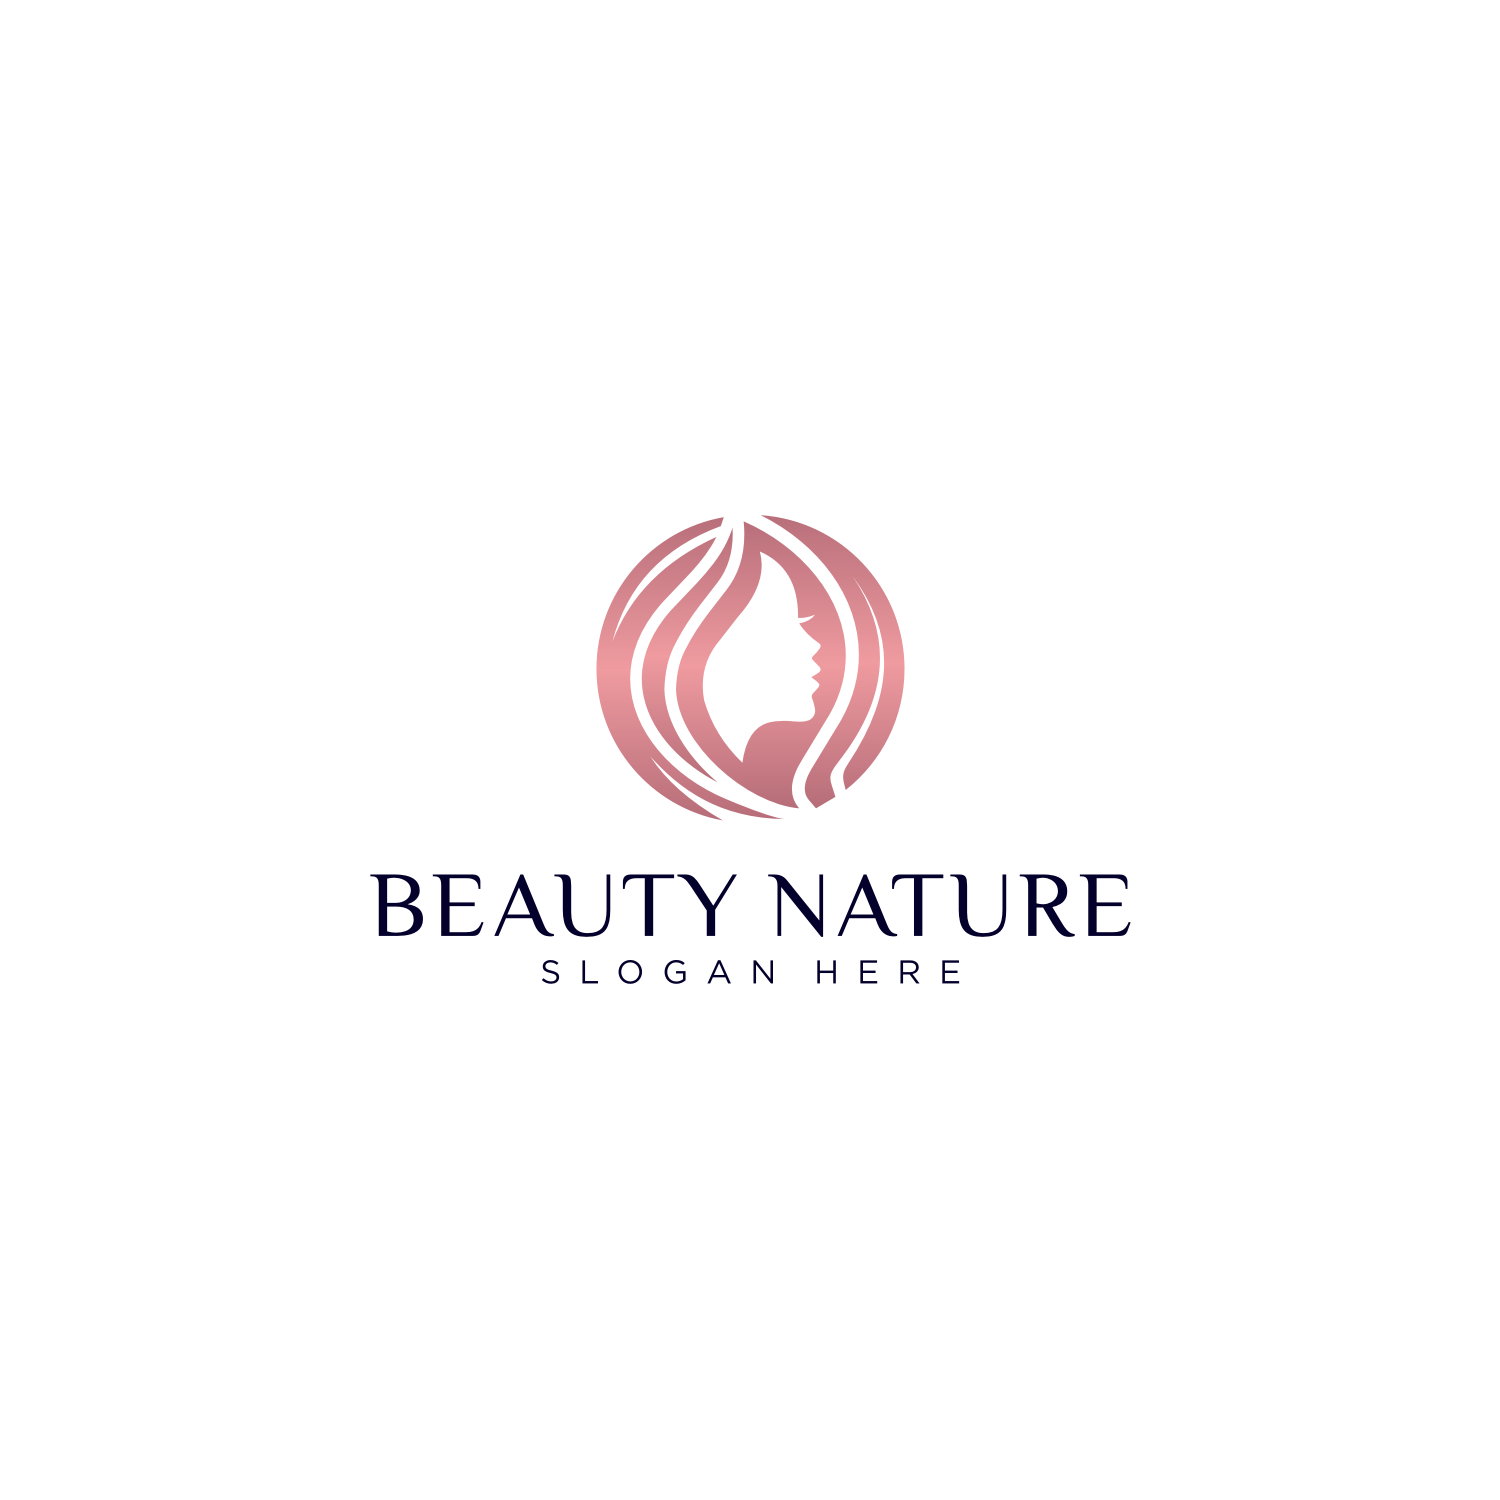 natural beauty logos